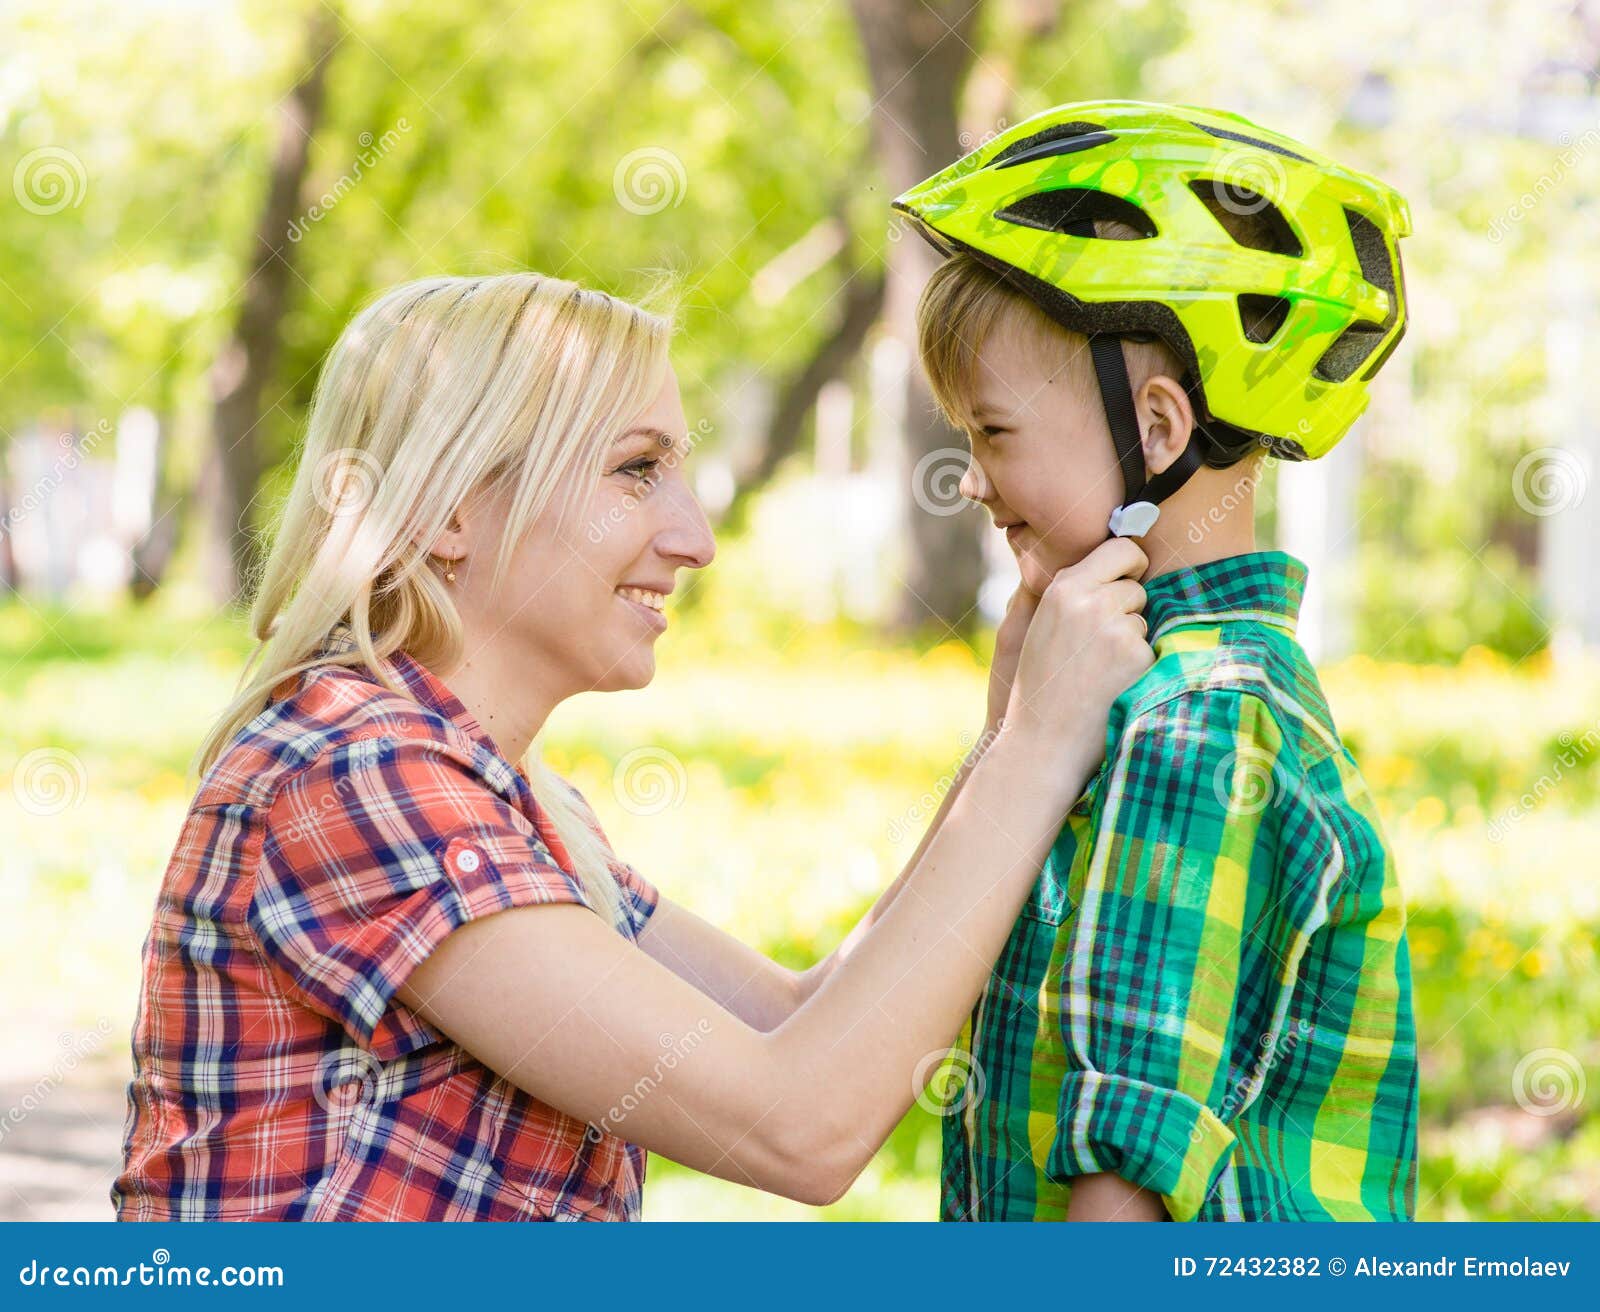 教女儿在公园骑自行车的母亲 库存照片. 图片 包括有 父项, 女孩, 循环, 系列, 喜悦, 休闲, 人员 - 222631948